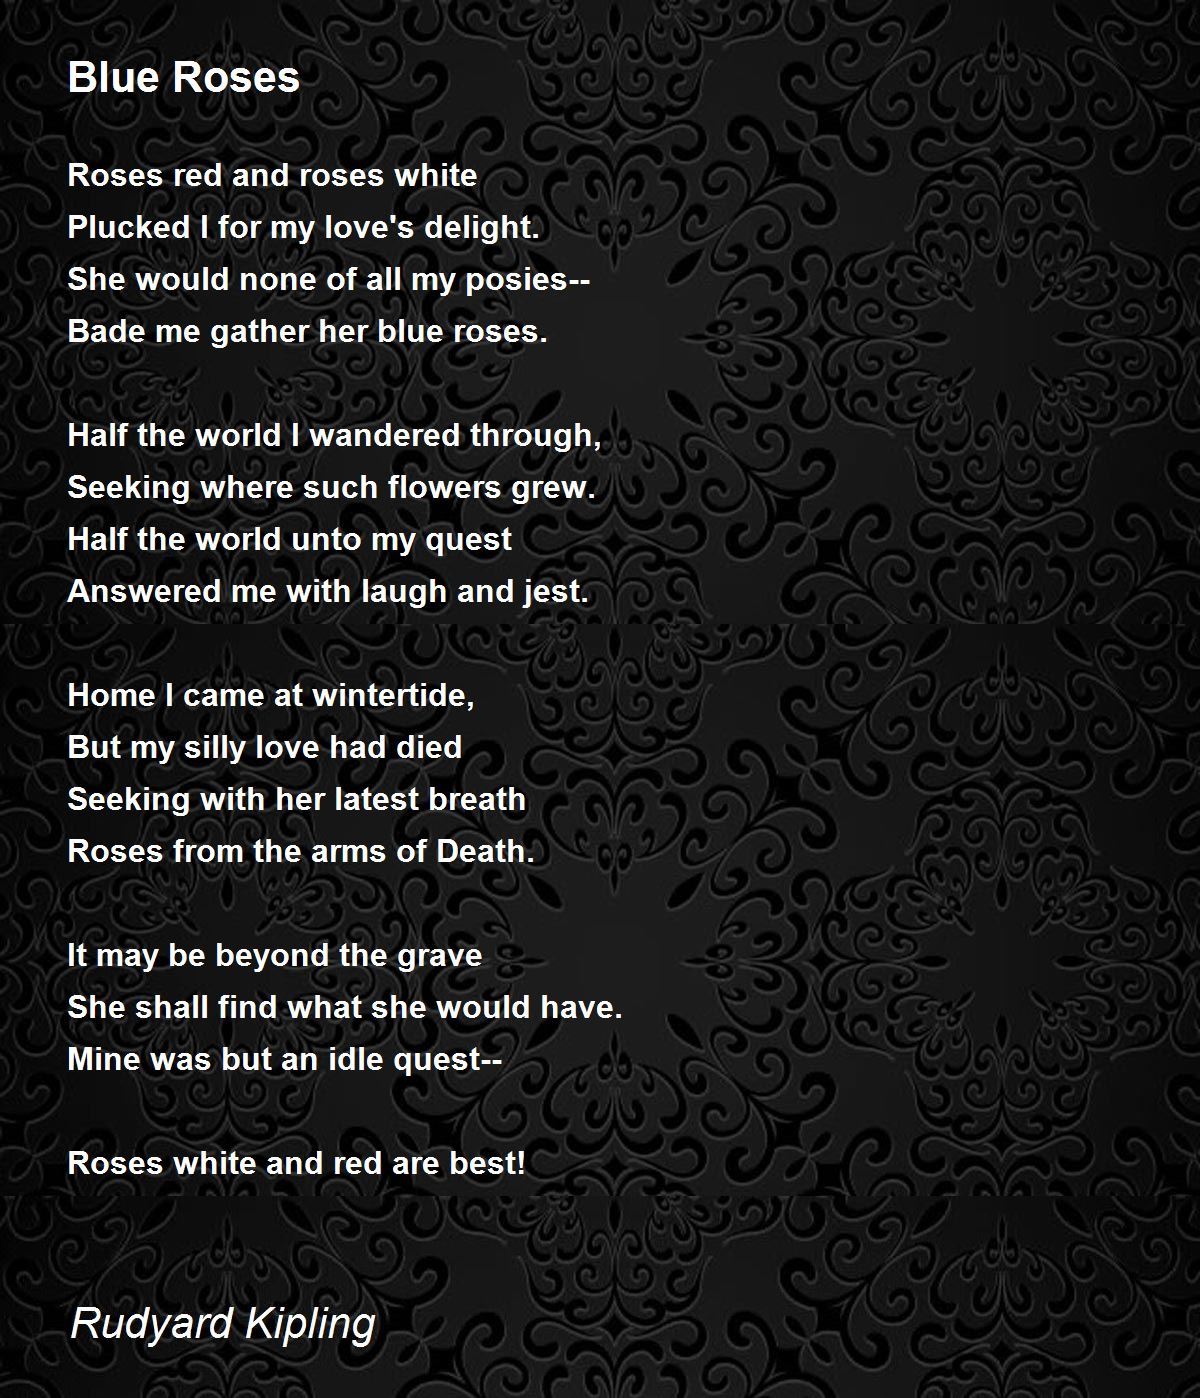 Blue Roses - Blue Roses Poem by Rudyard Kipling